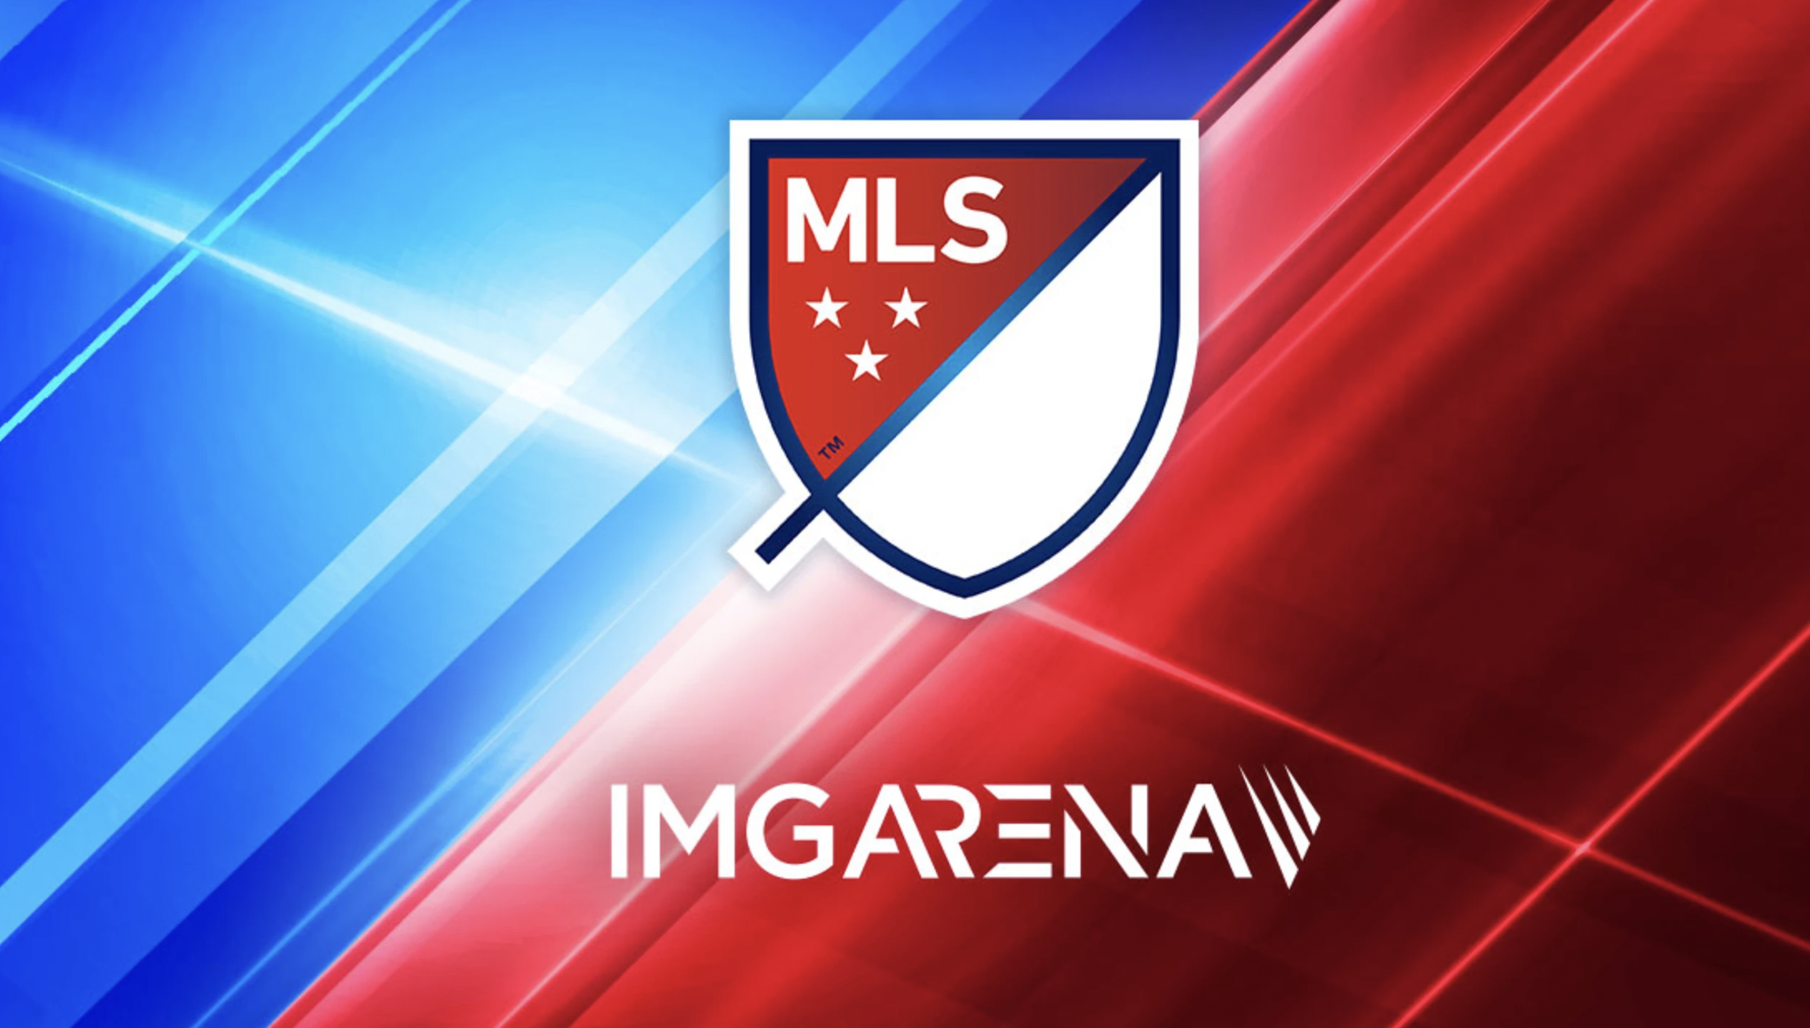 MLS beauftragt IMG Arena mit der Erstellung datengesteuerter Inhalte für den Verkauf an das boomende Wettgeschäft